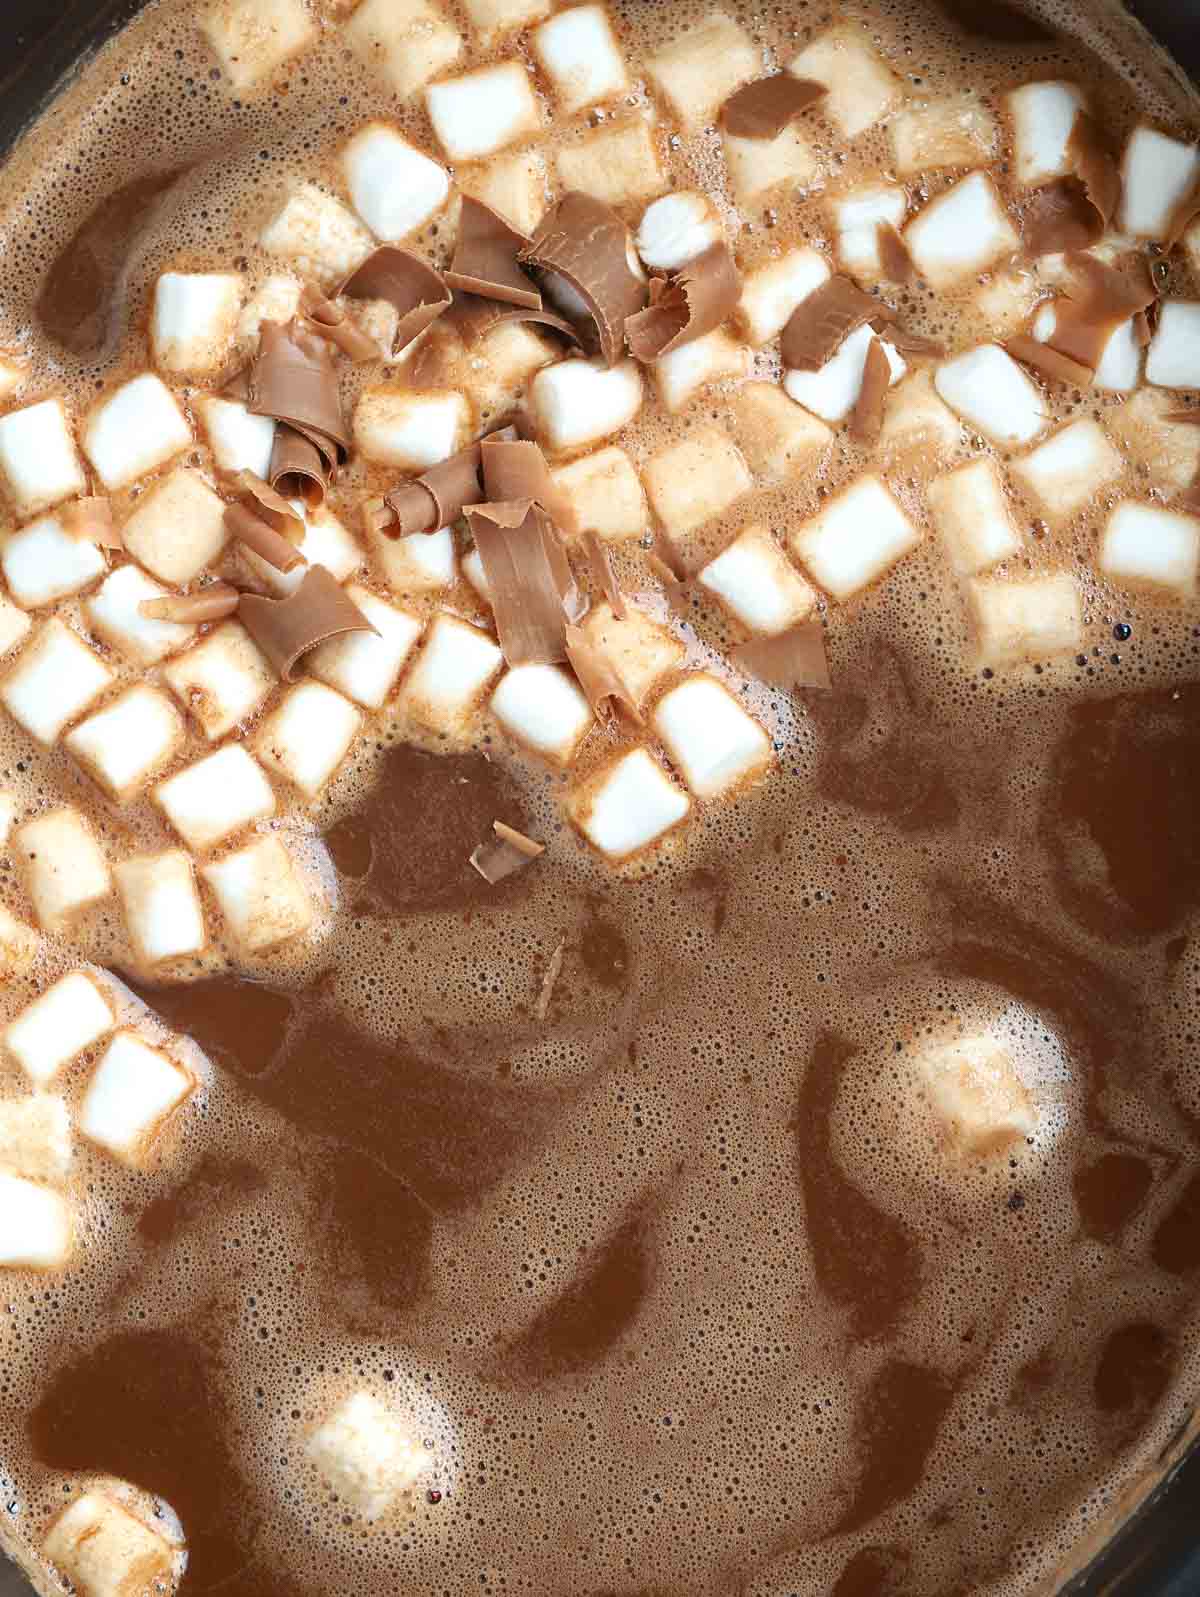 Irish cream cocoa recipe with marshmallows